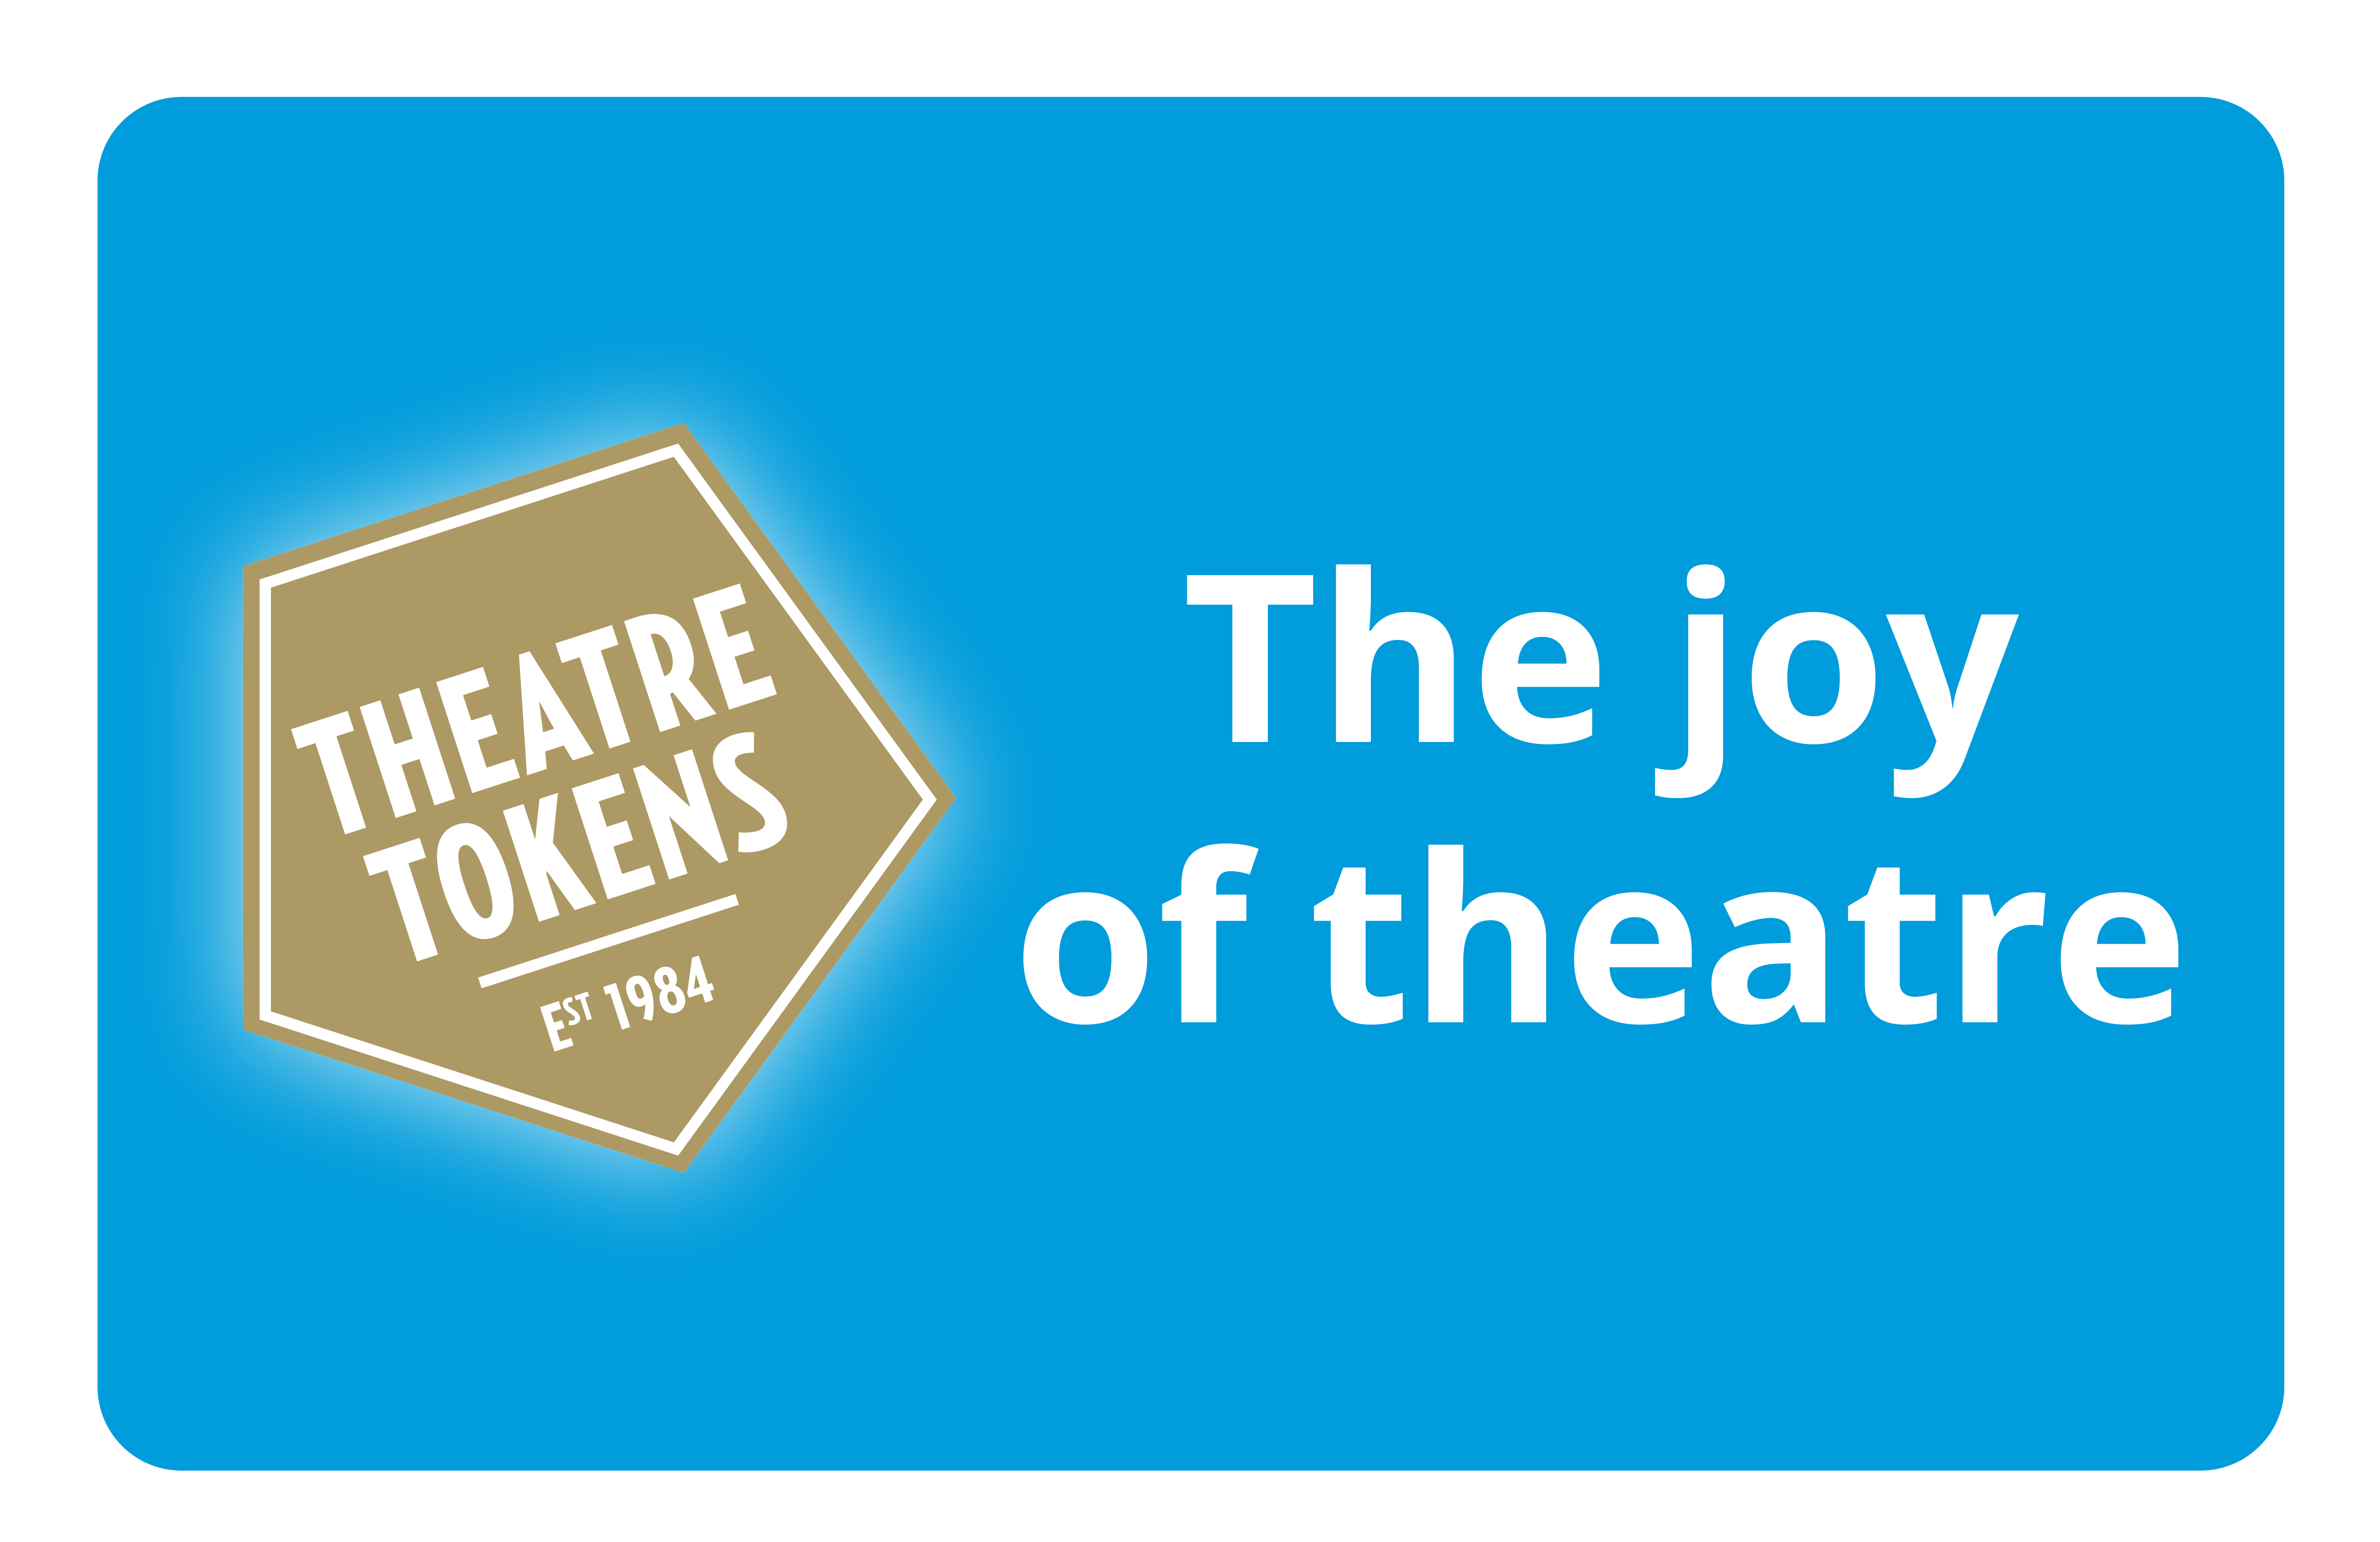 The Joy of Theatre